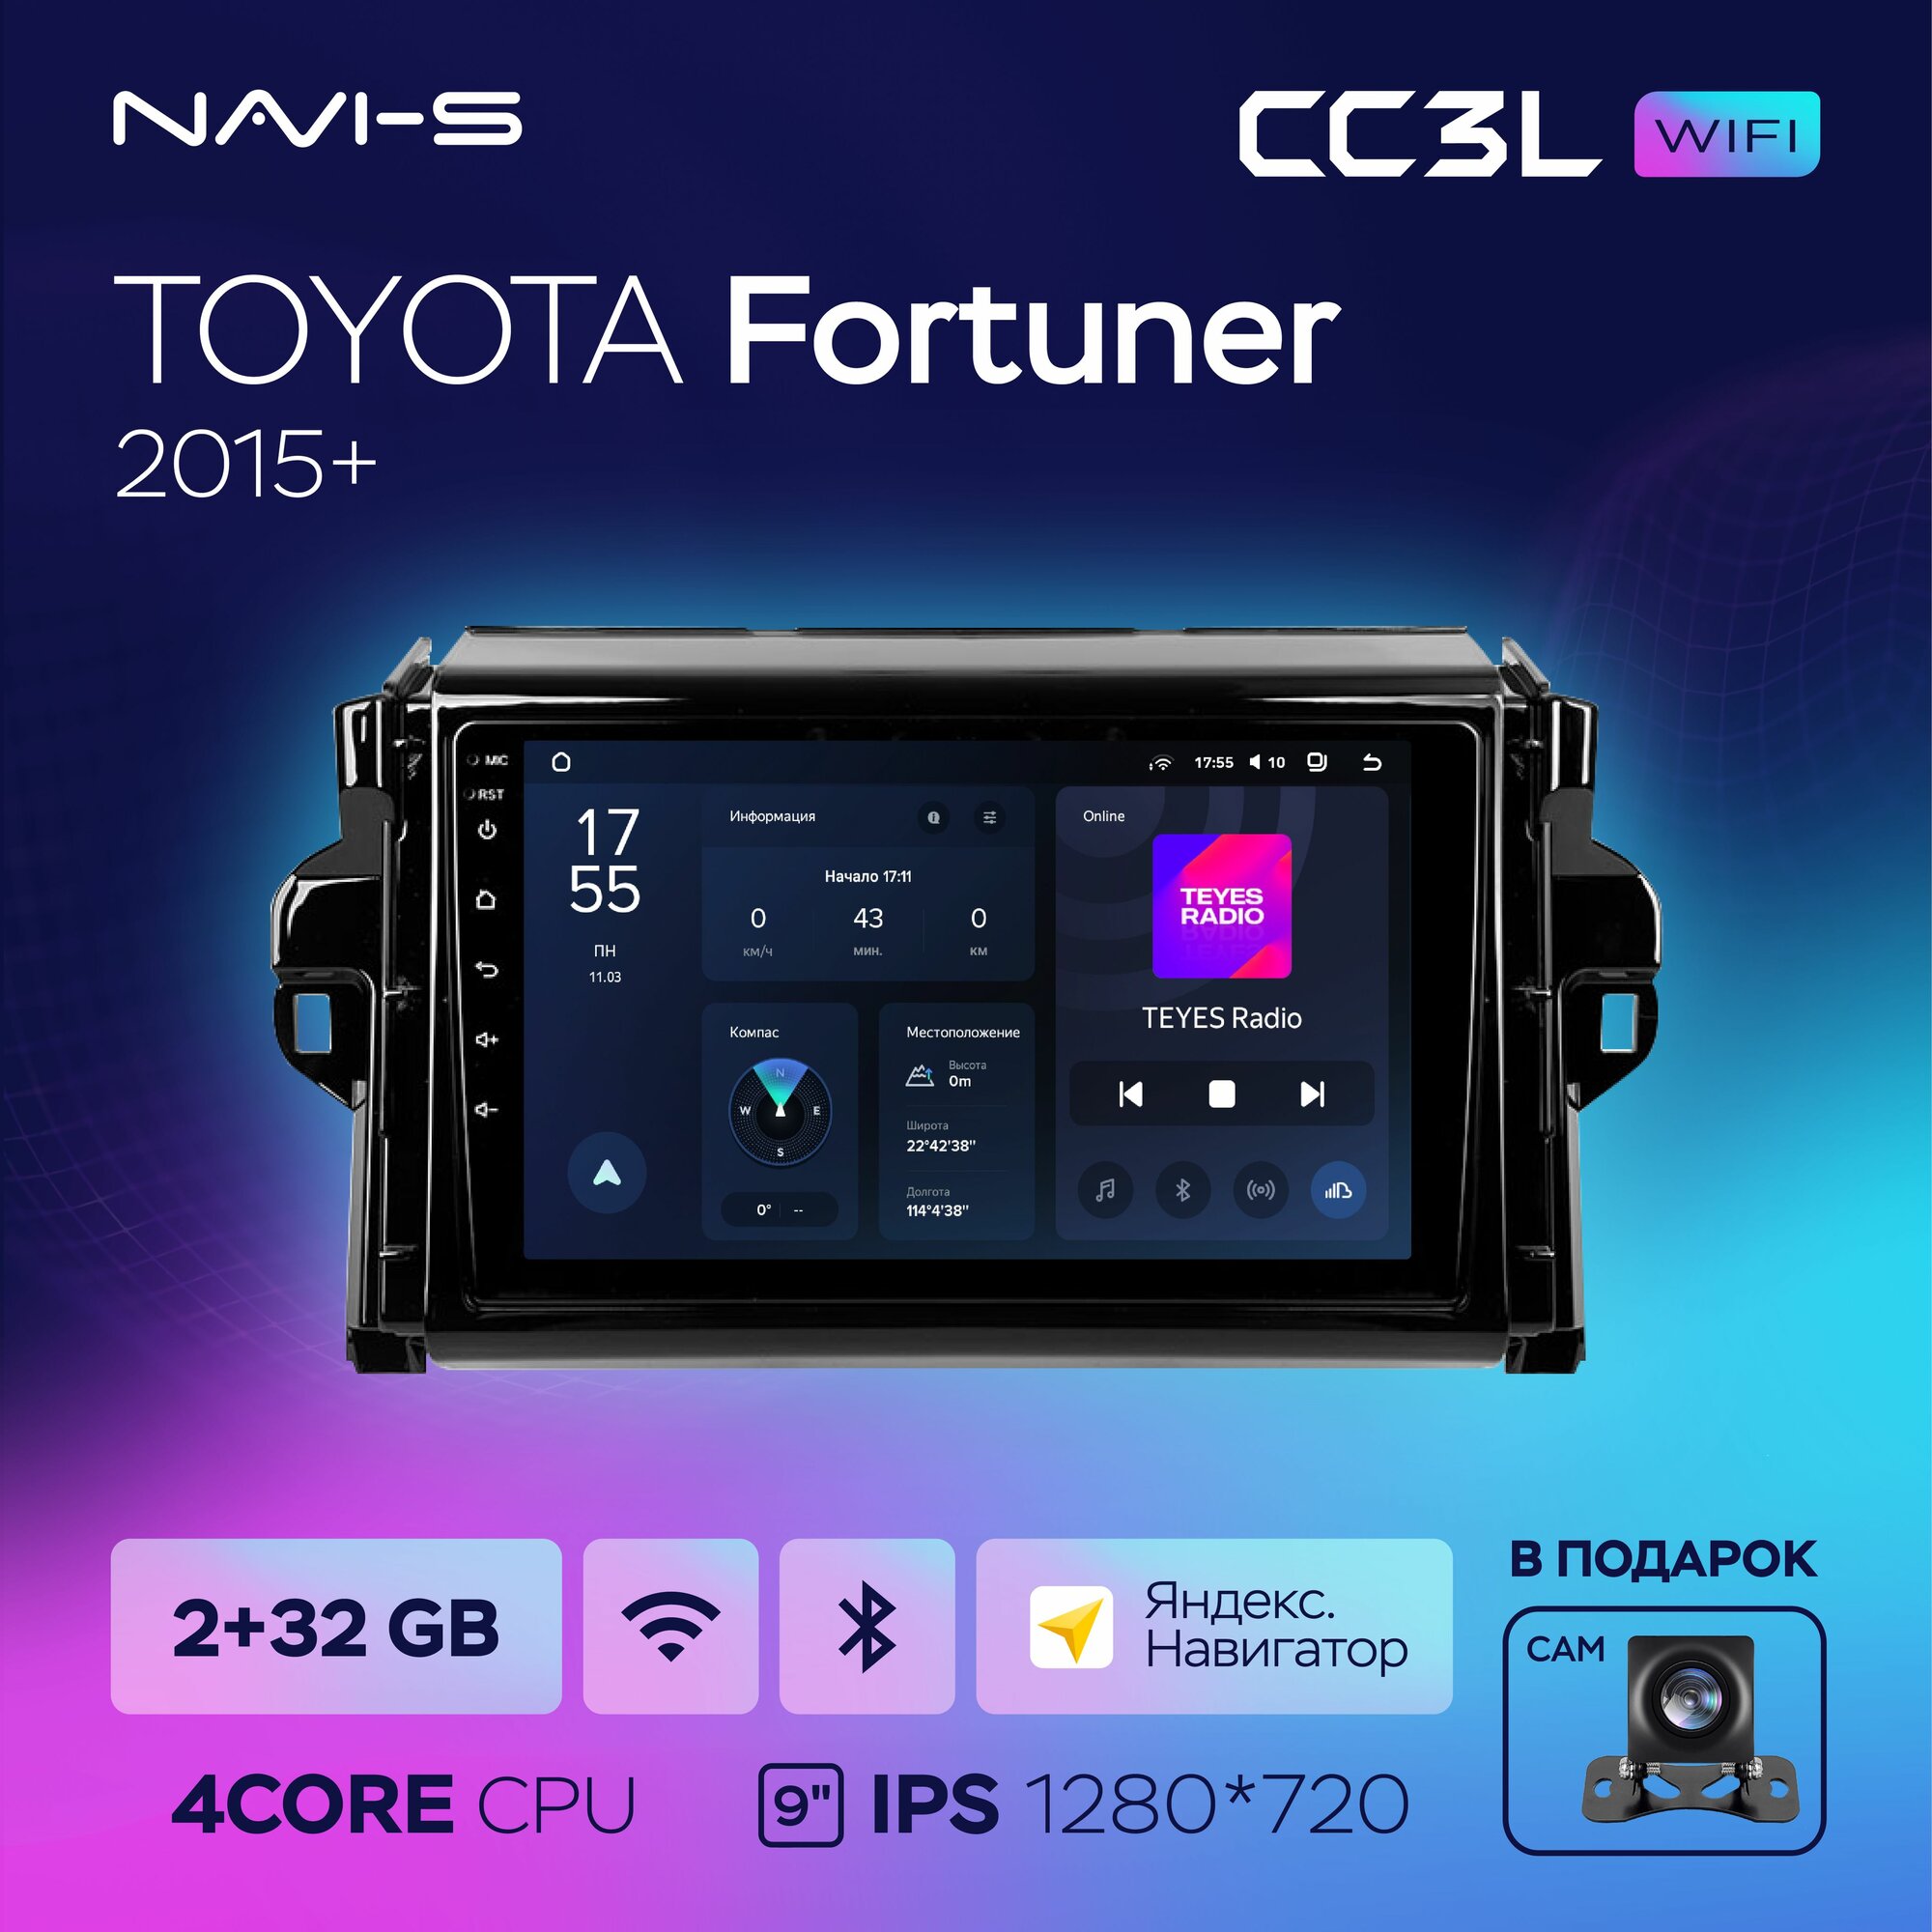 Автомагнитола Teyes CC3L Wi-Fi 2/32GB для Toyota Fortuner (Тойота Фортюнер) 2015+